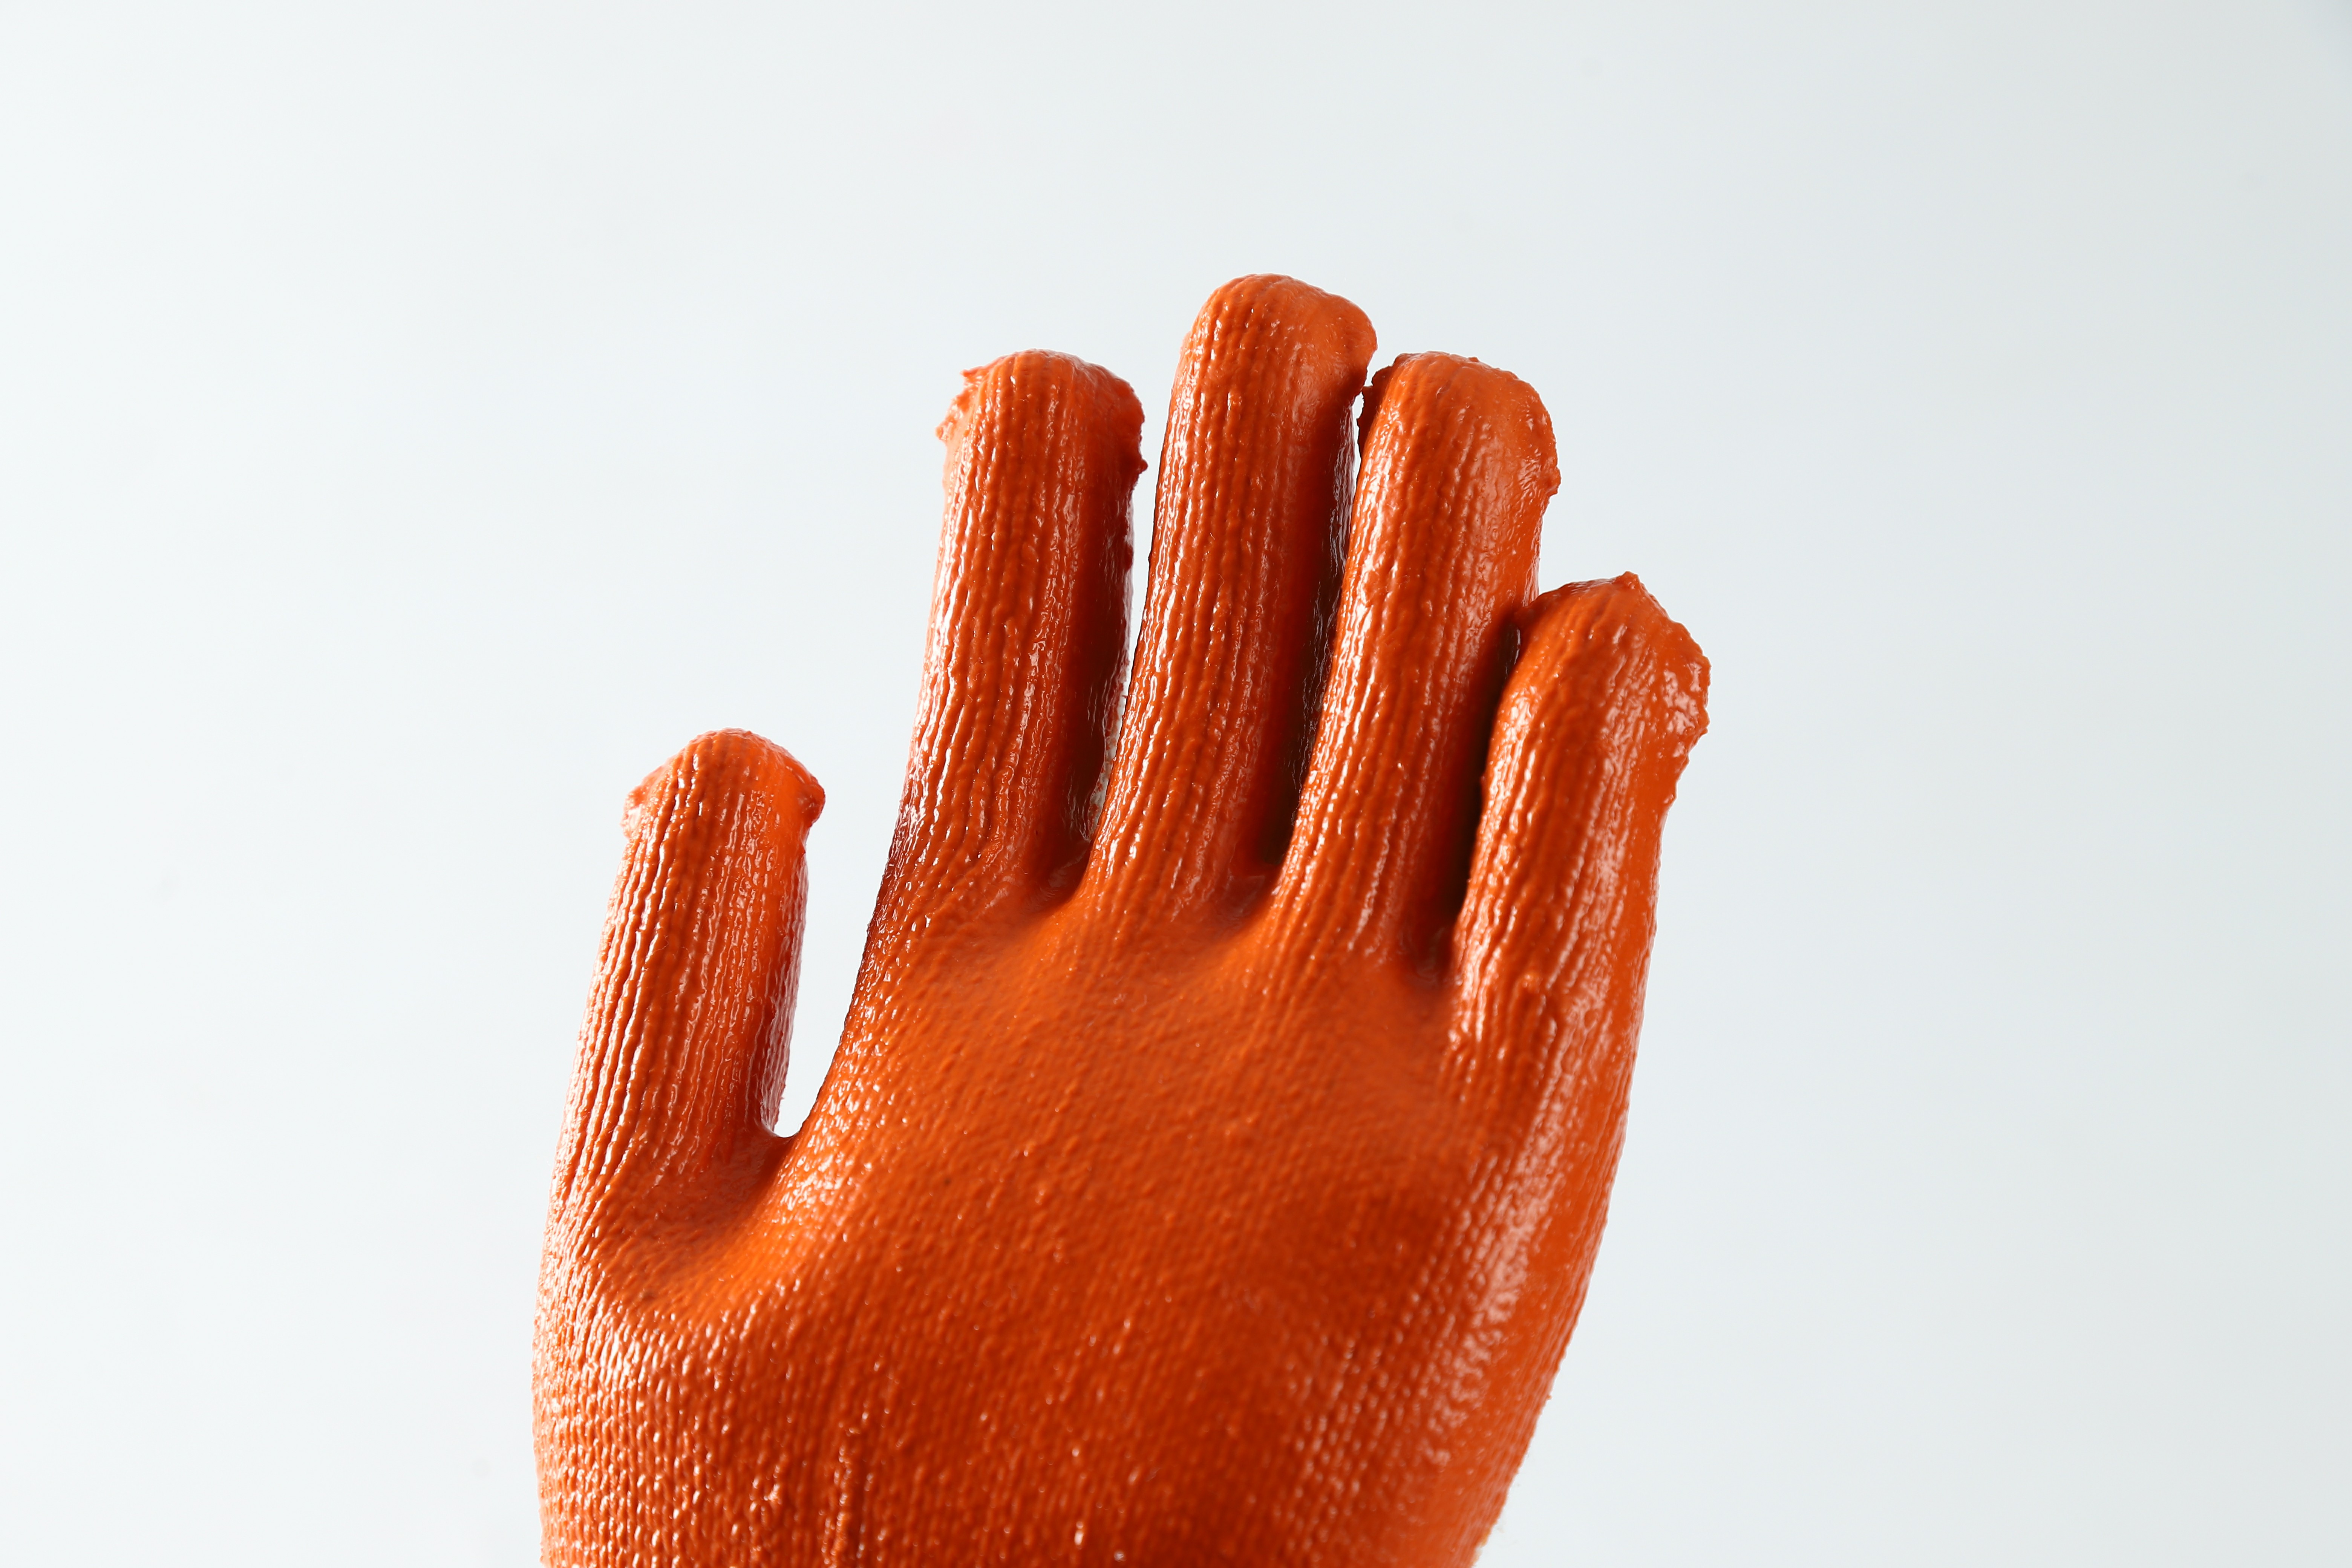 10 Gauge cotton Latex Coated  anti-slip gardening safety work glove